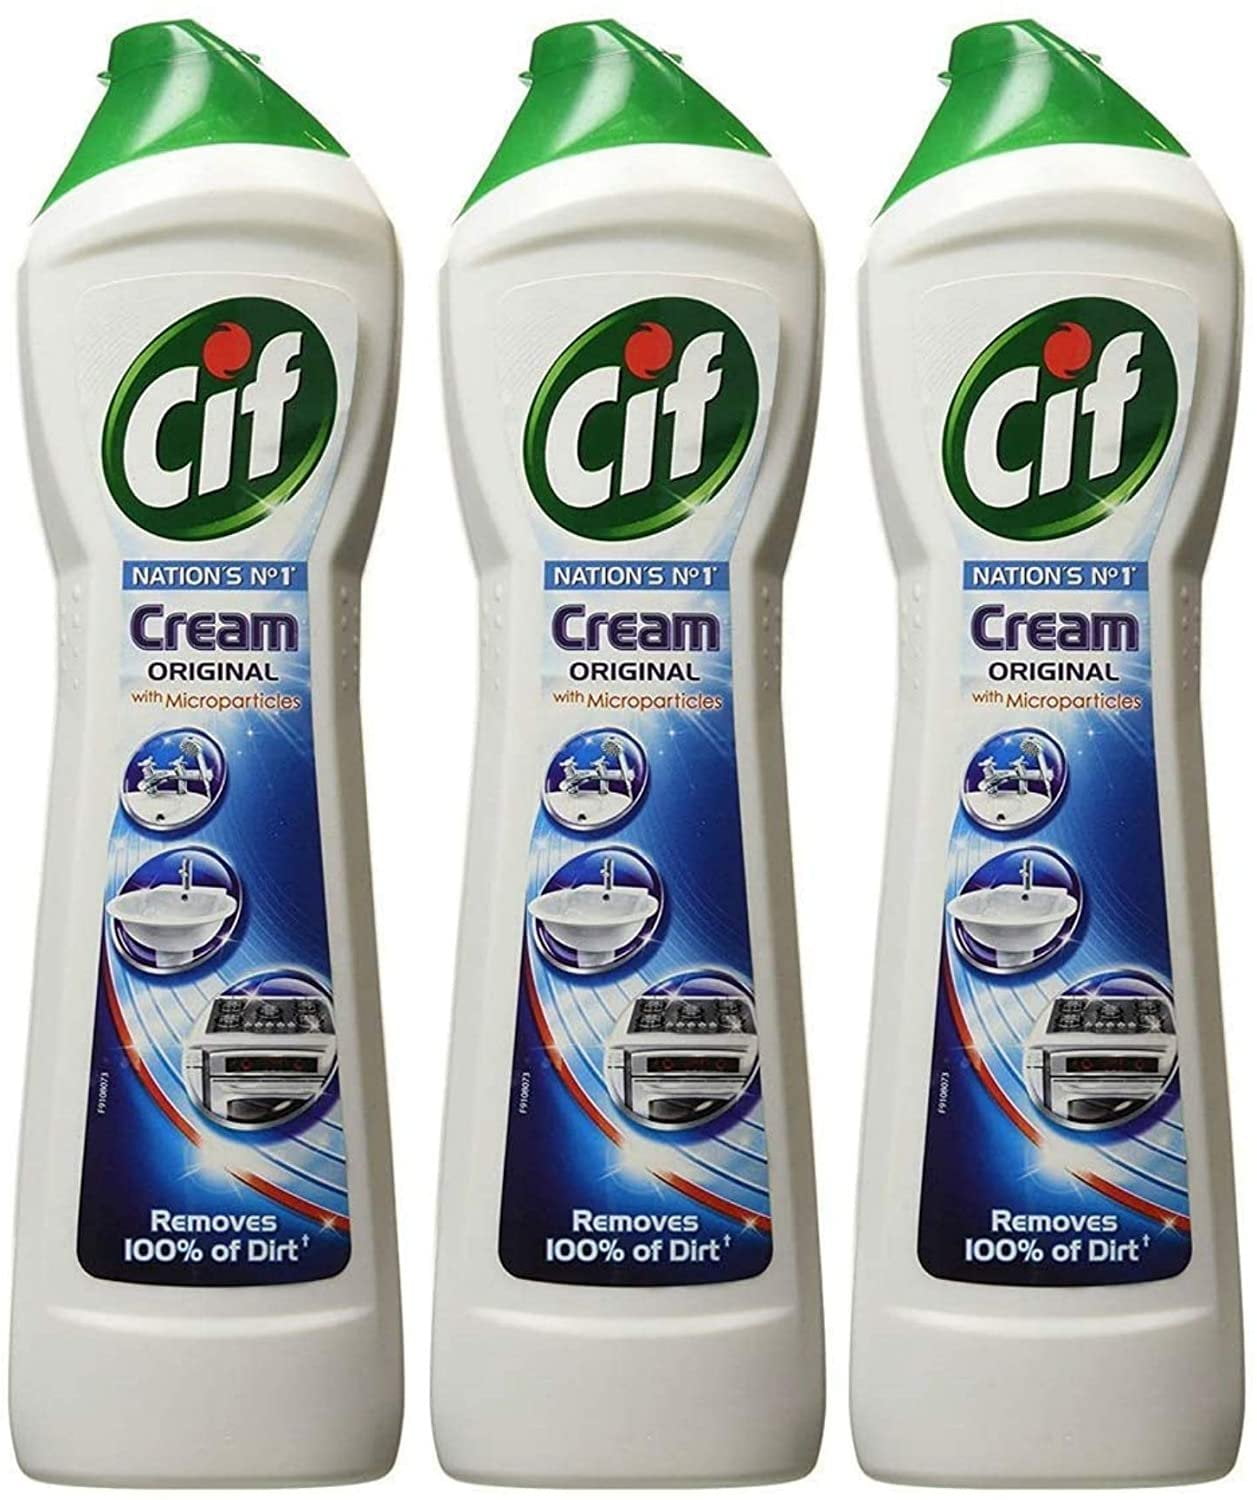 Cif Cream Cleaner Original 500ml PACK OF 3